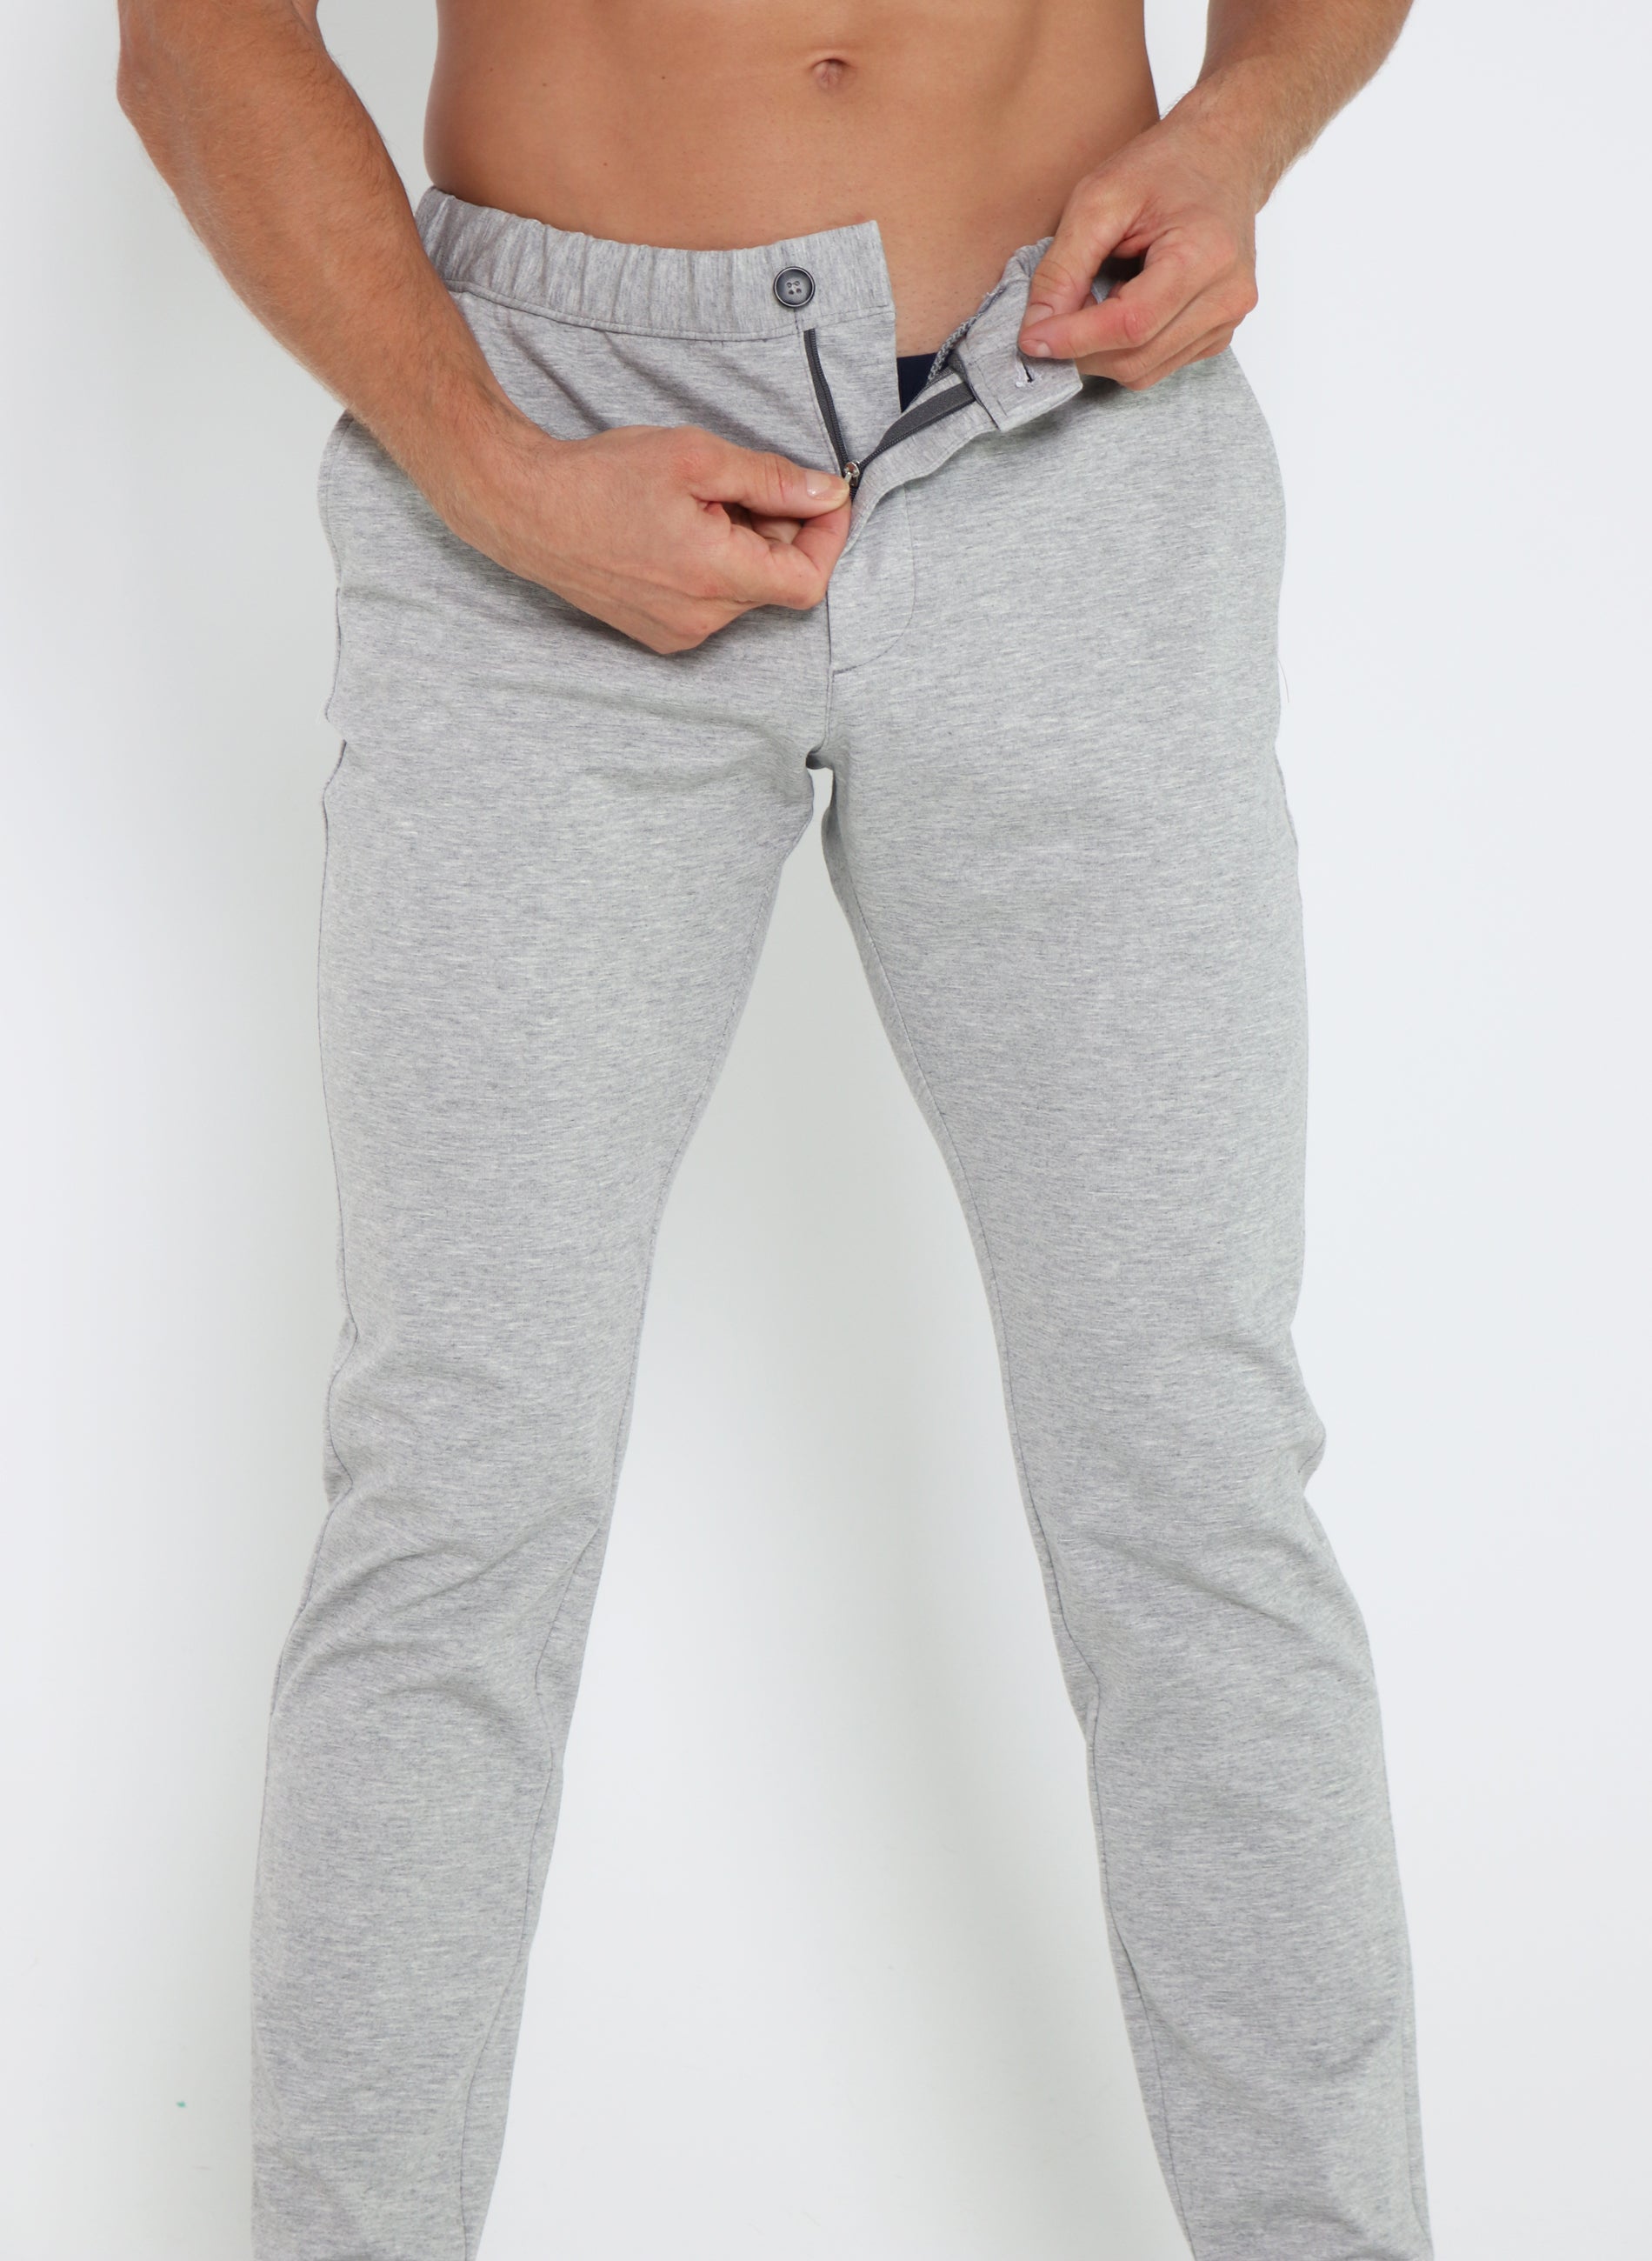 Manfinity Hombres Jeans joggers con bolsillo oblicuo, Moda de Mujer